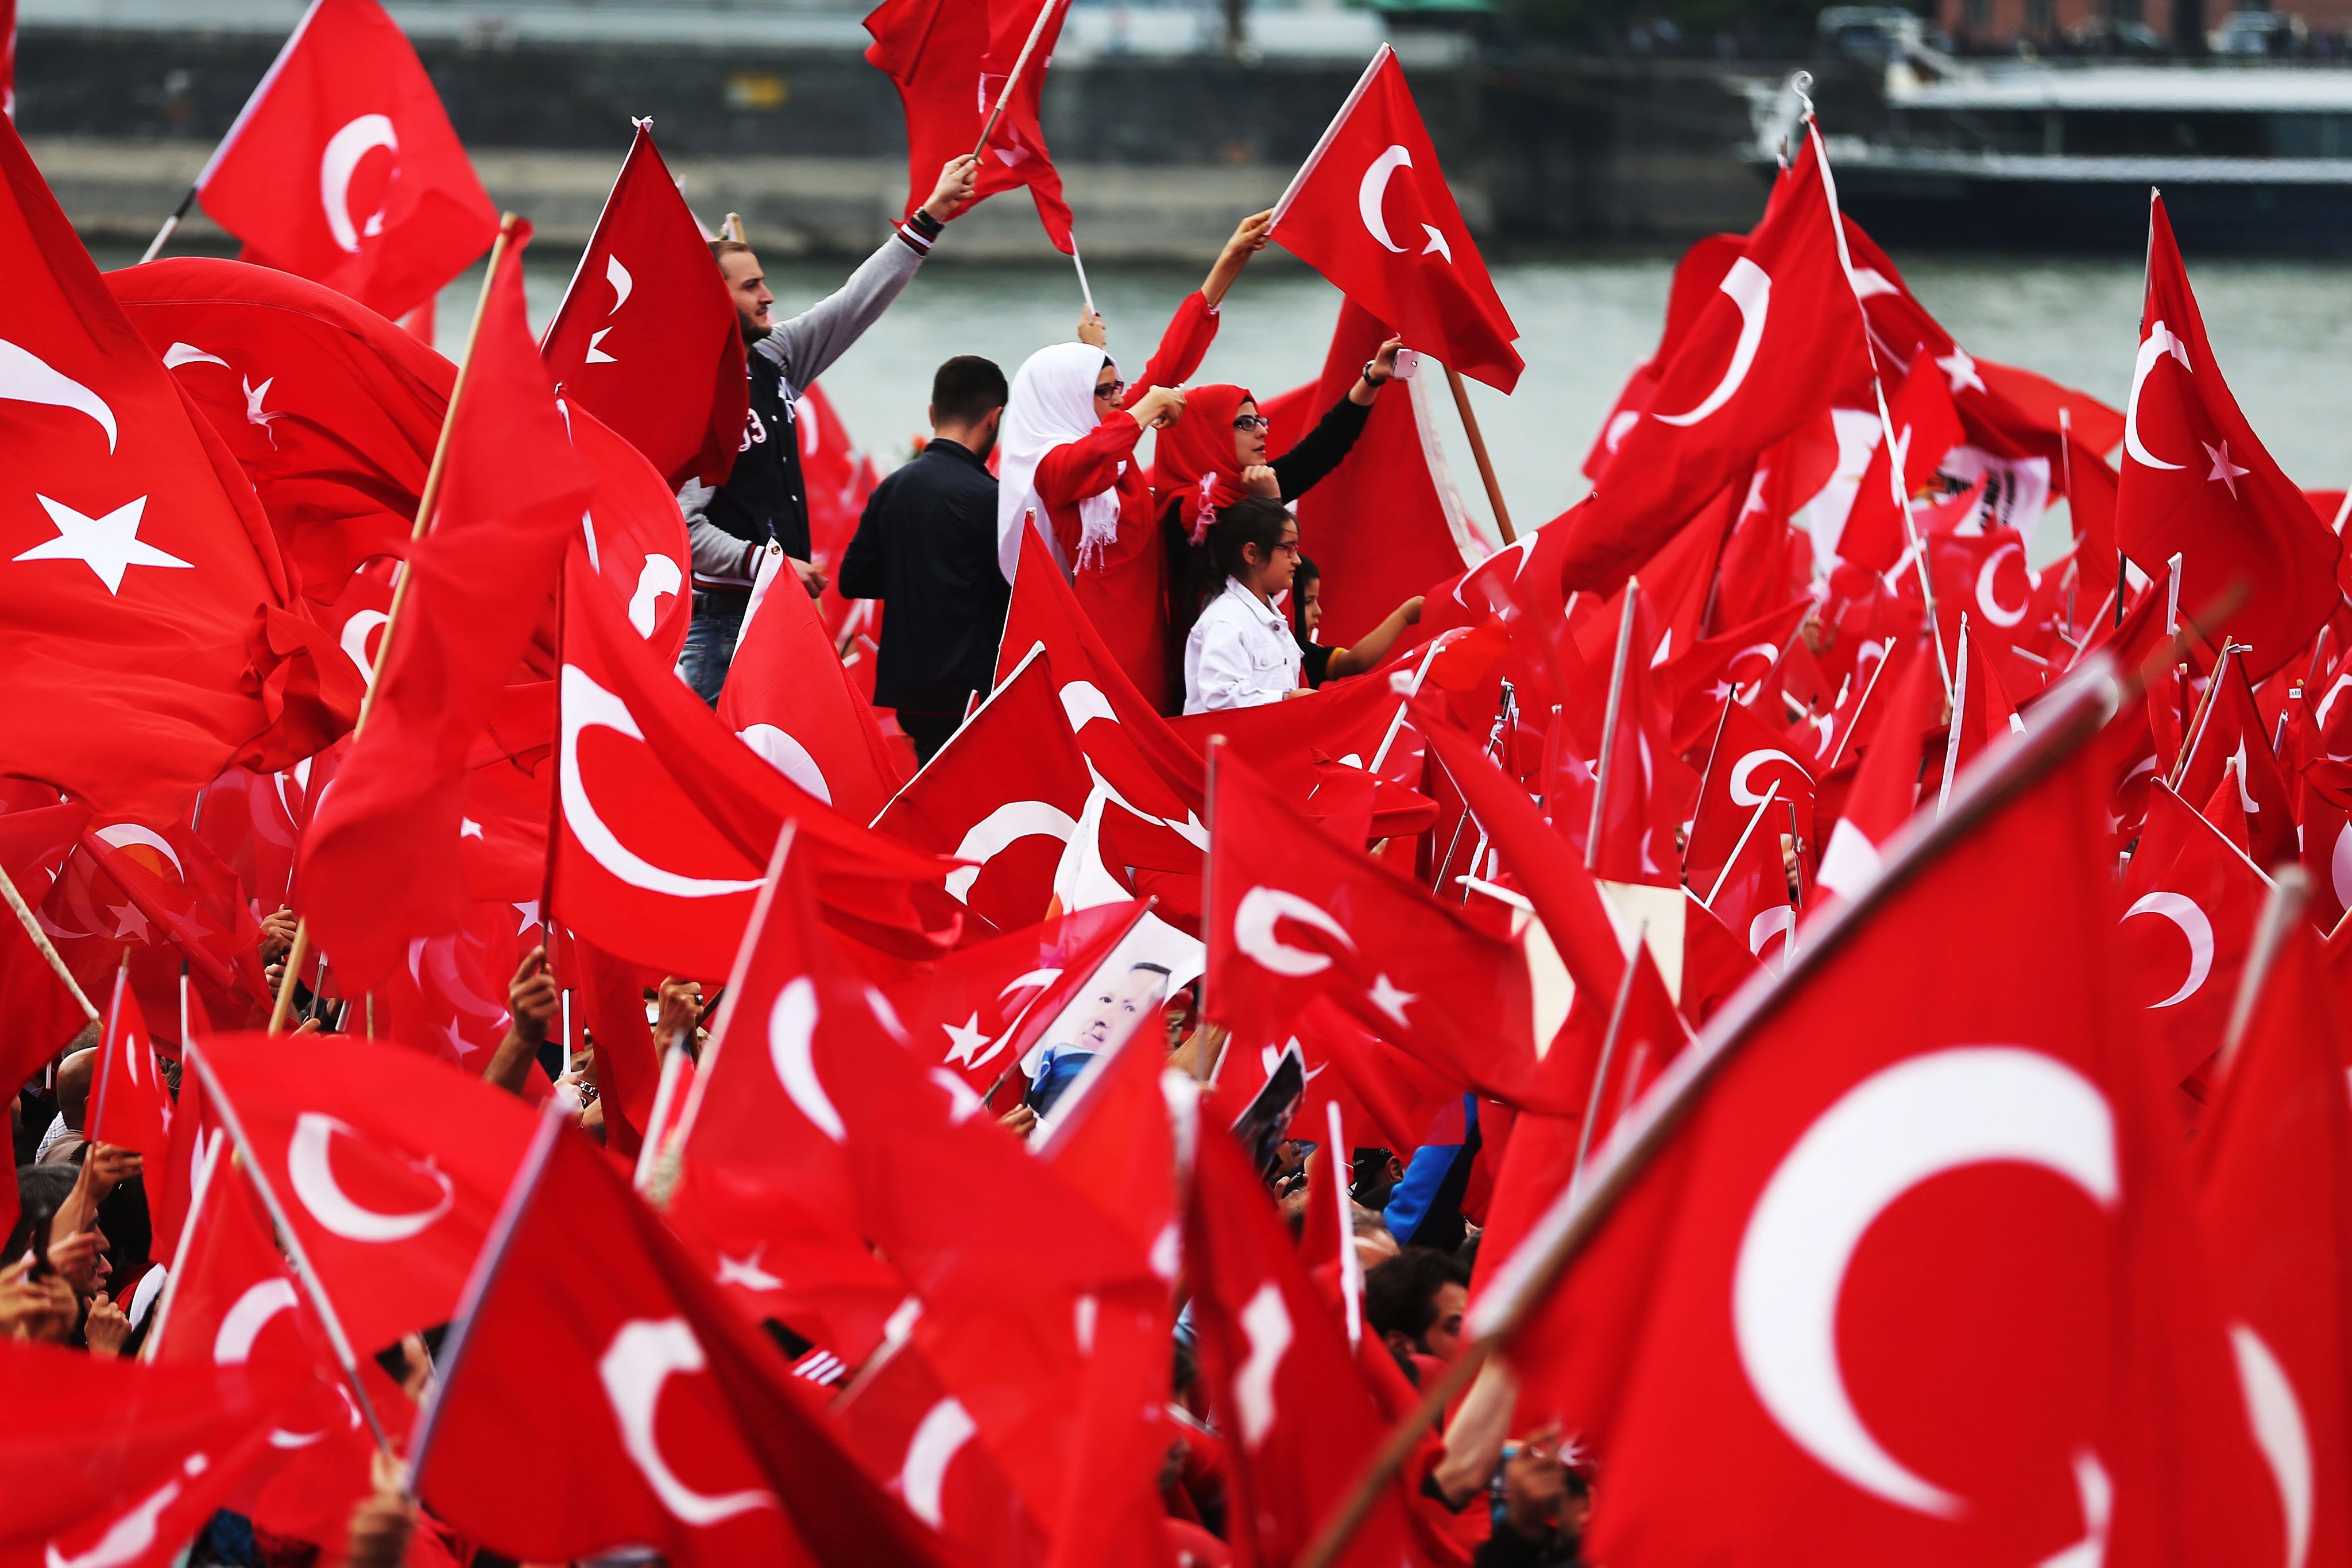 Les relacions entre Alemanya i Turquia, en plena crisi